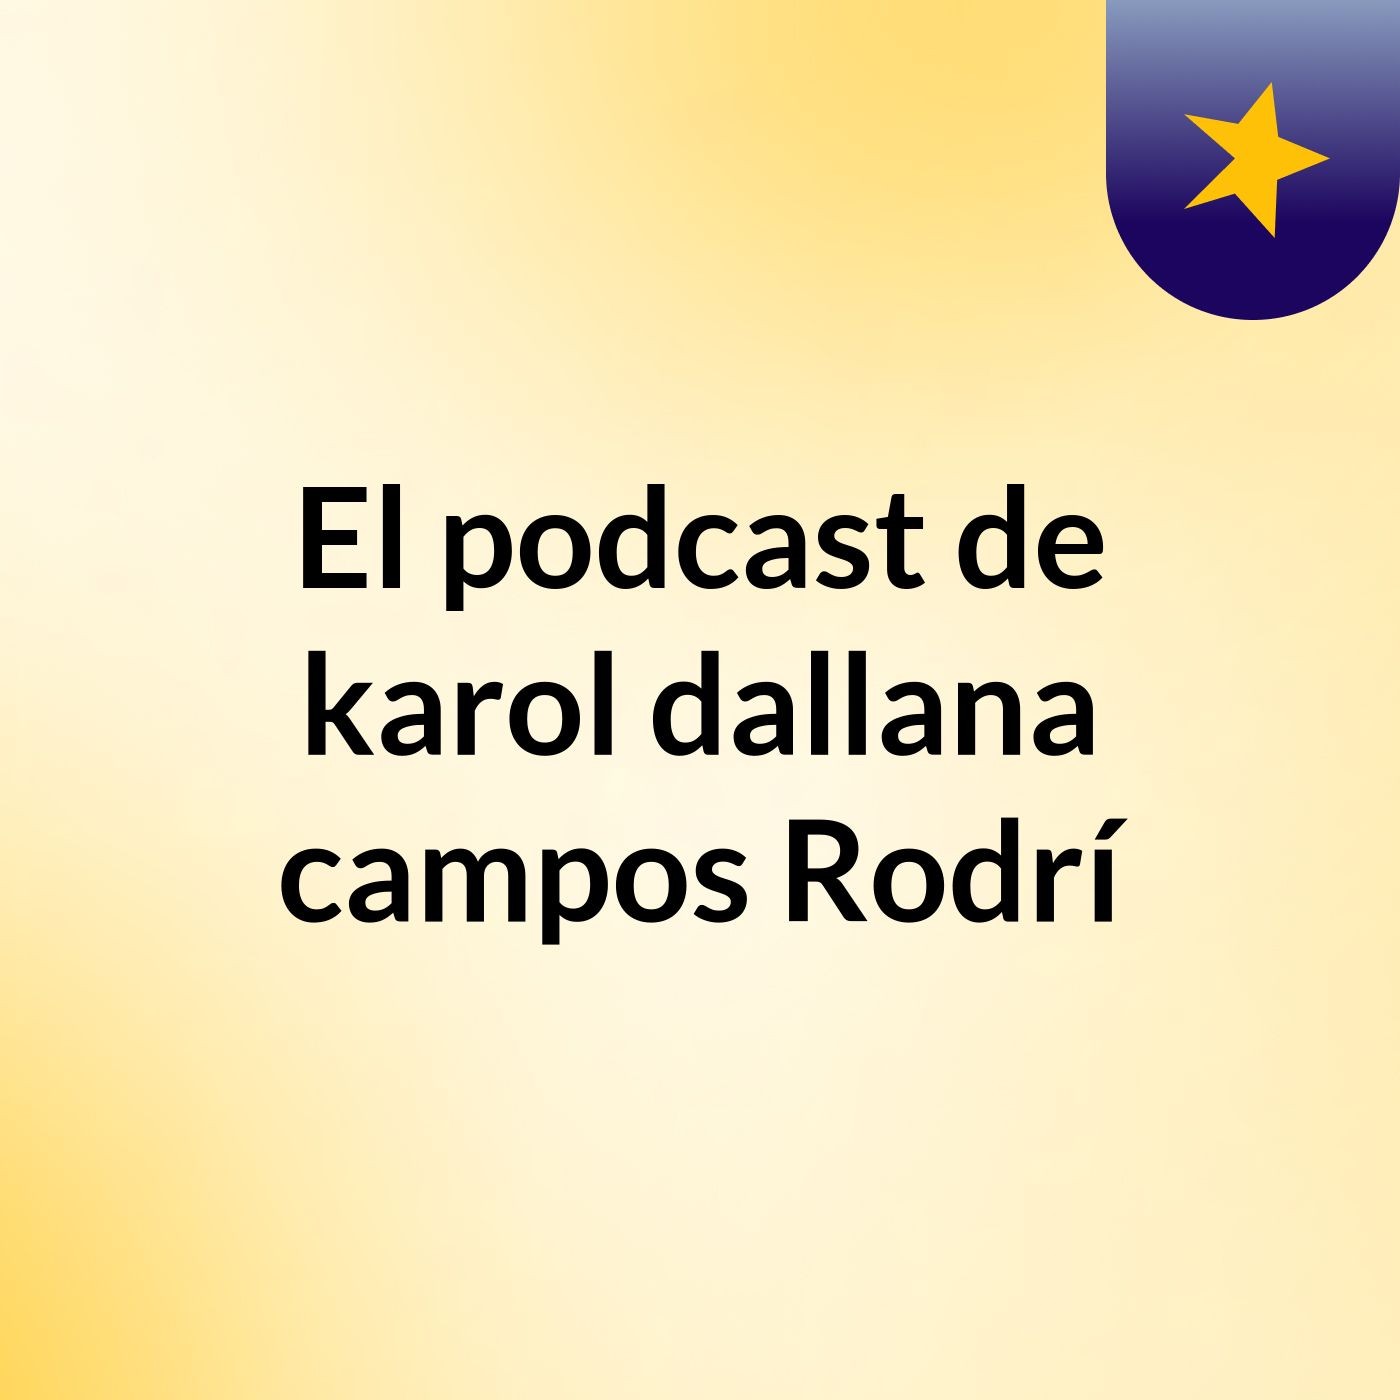 El podcast de karol dallana campos Rodrí